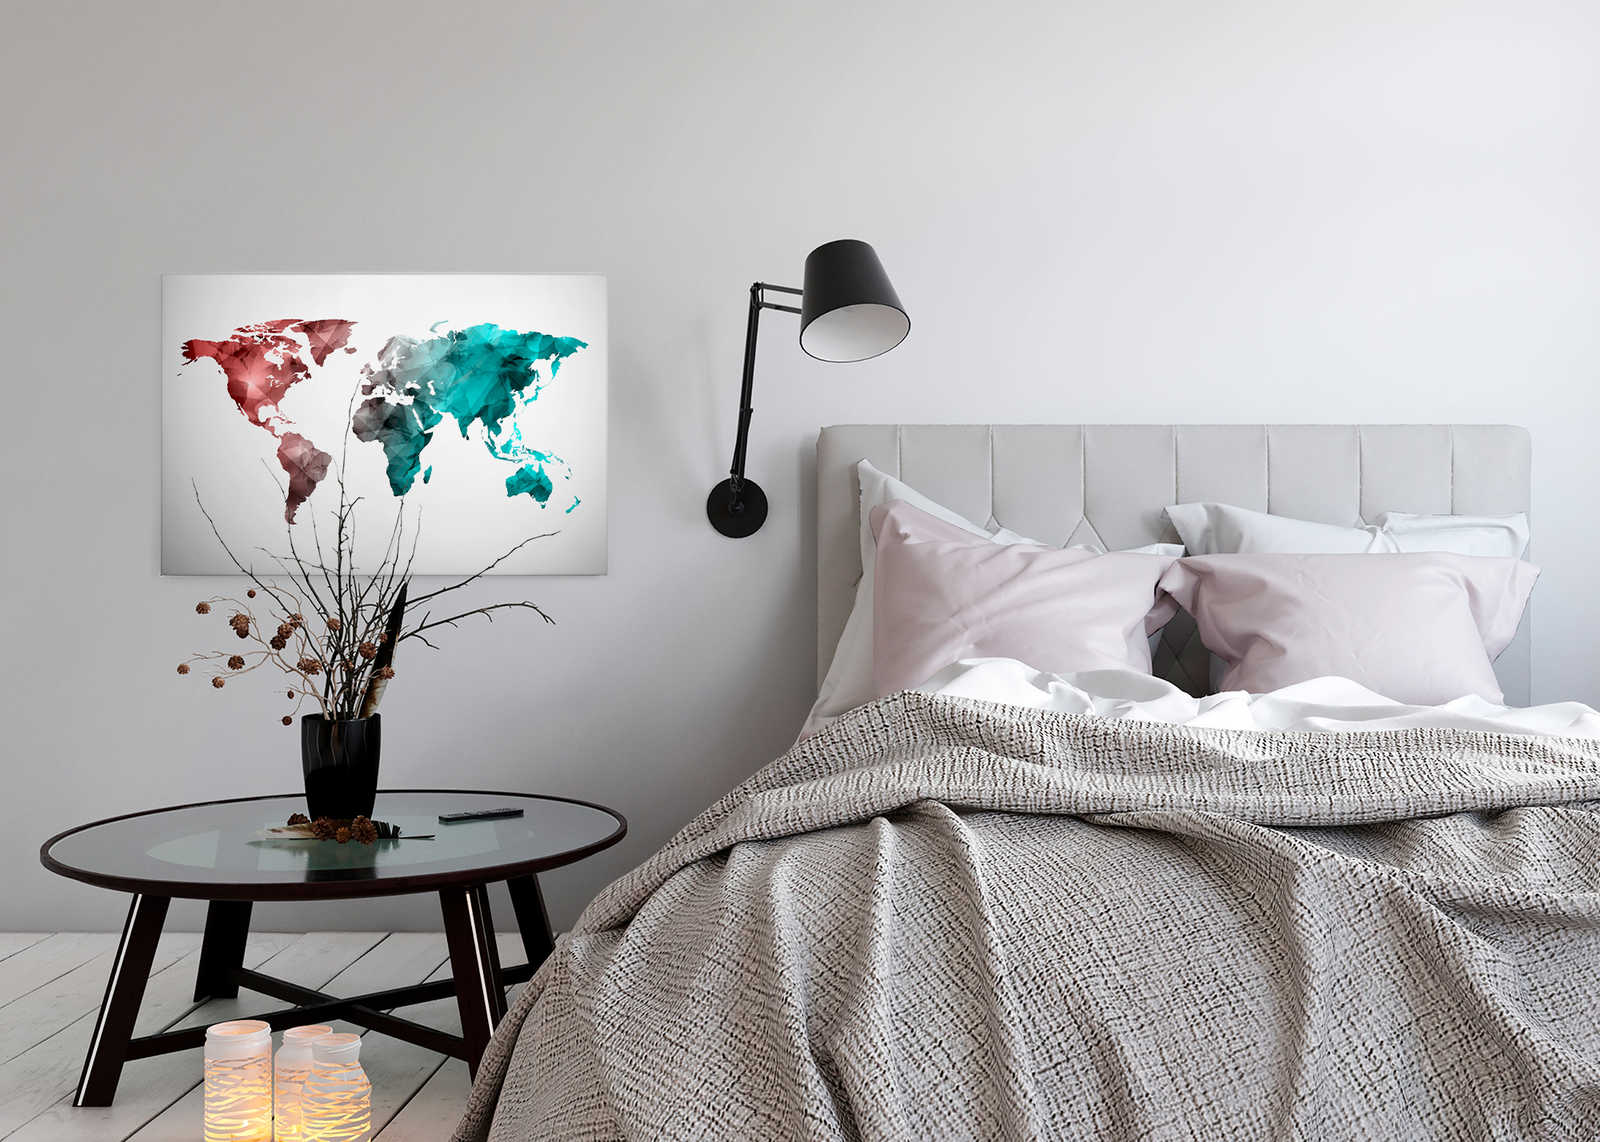             Canvas met wereldkaart gemaakt van grafische elementen | WorldGrafic 2 - 0,90 m x 0,60 m
        